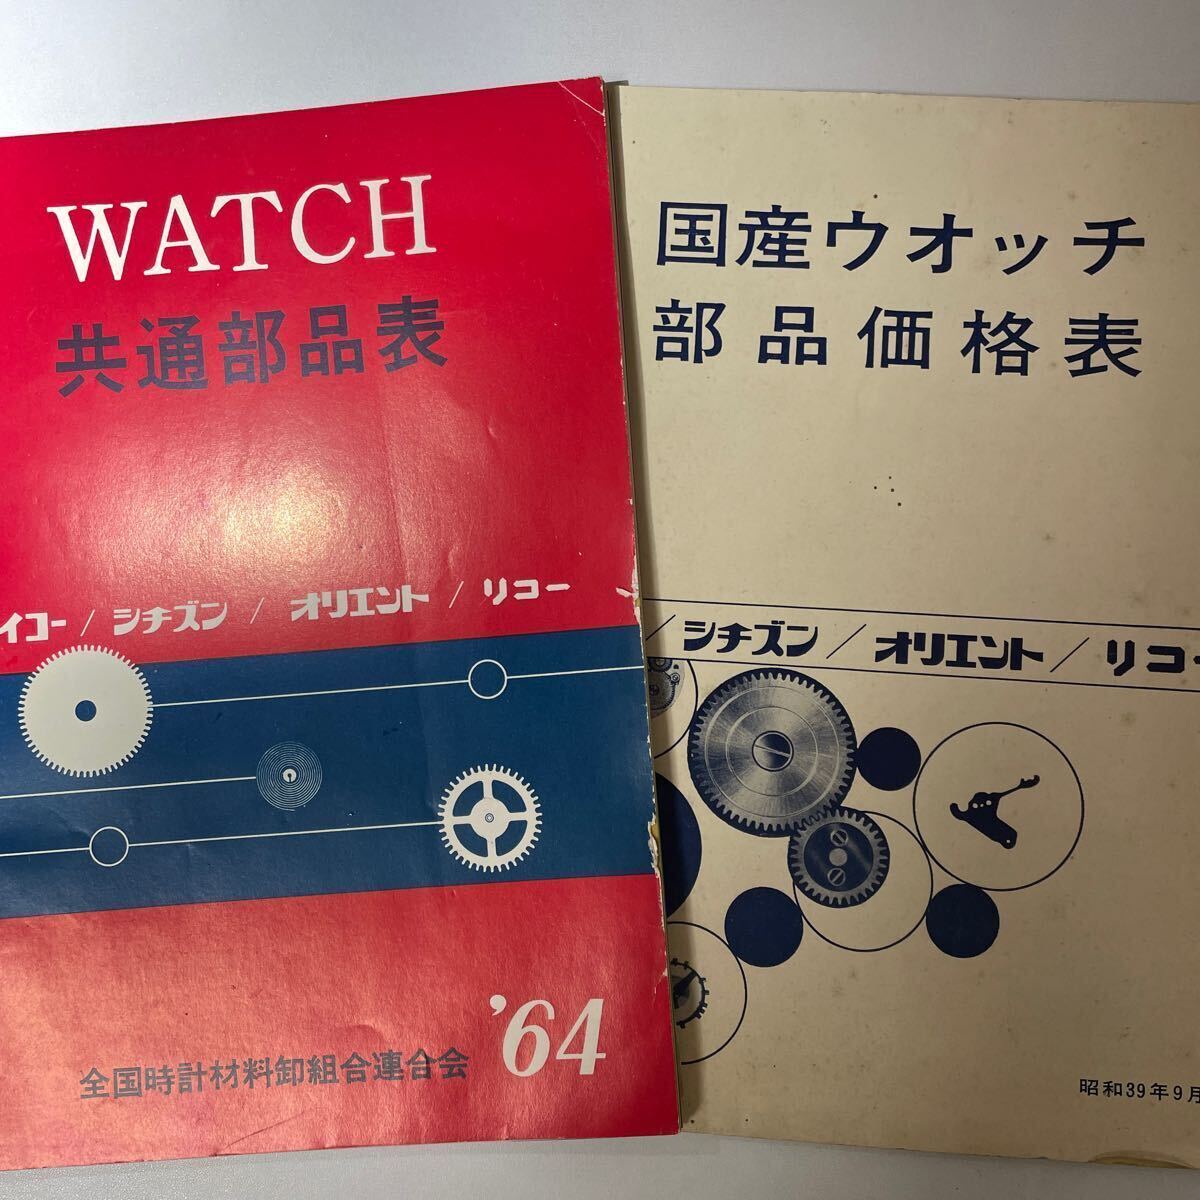 1964年 共通部品表 部品価格表 国産腕時計 セイコー リコー シチズン オリエント 希少品 時計カタログ ウォッチカタログの画像1